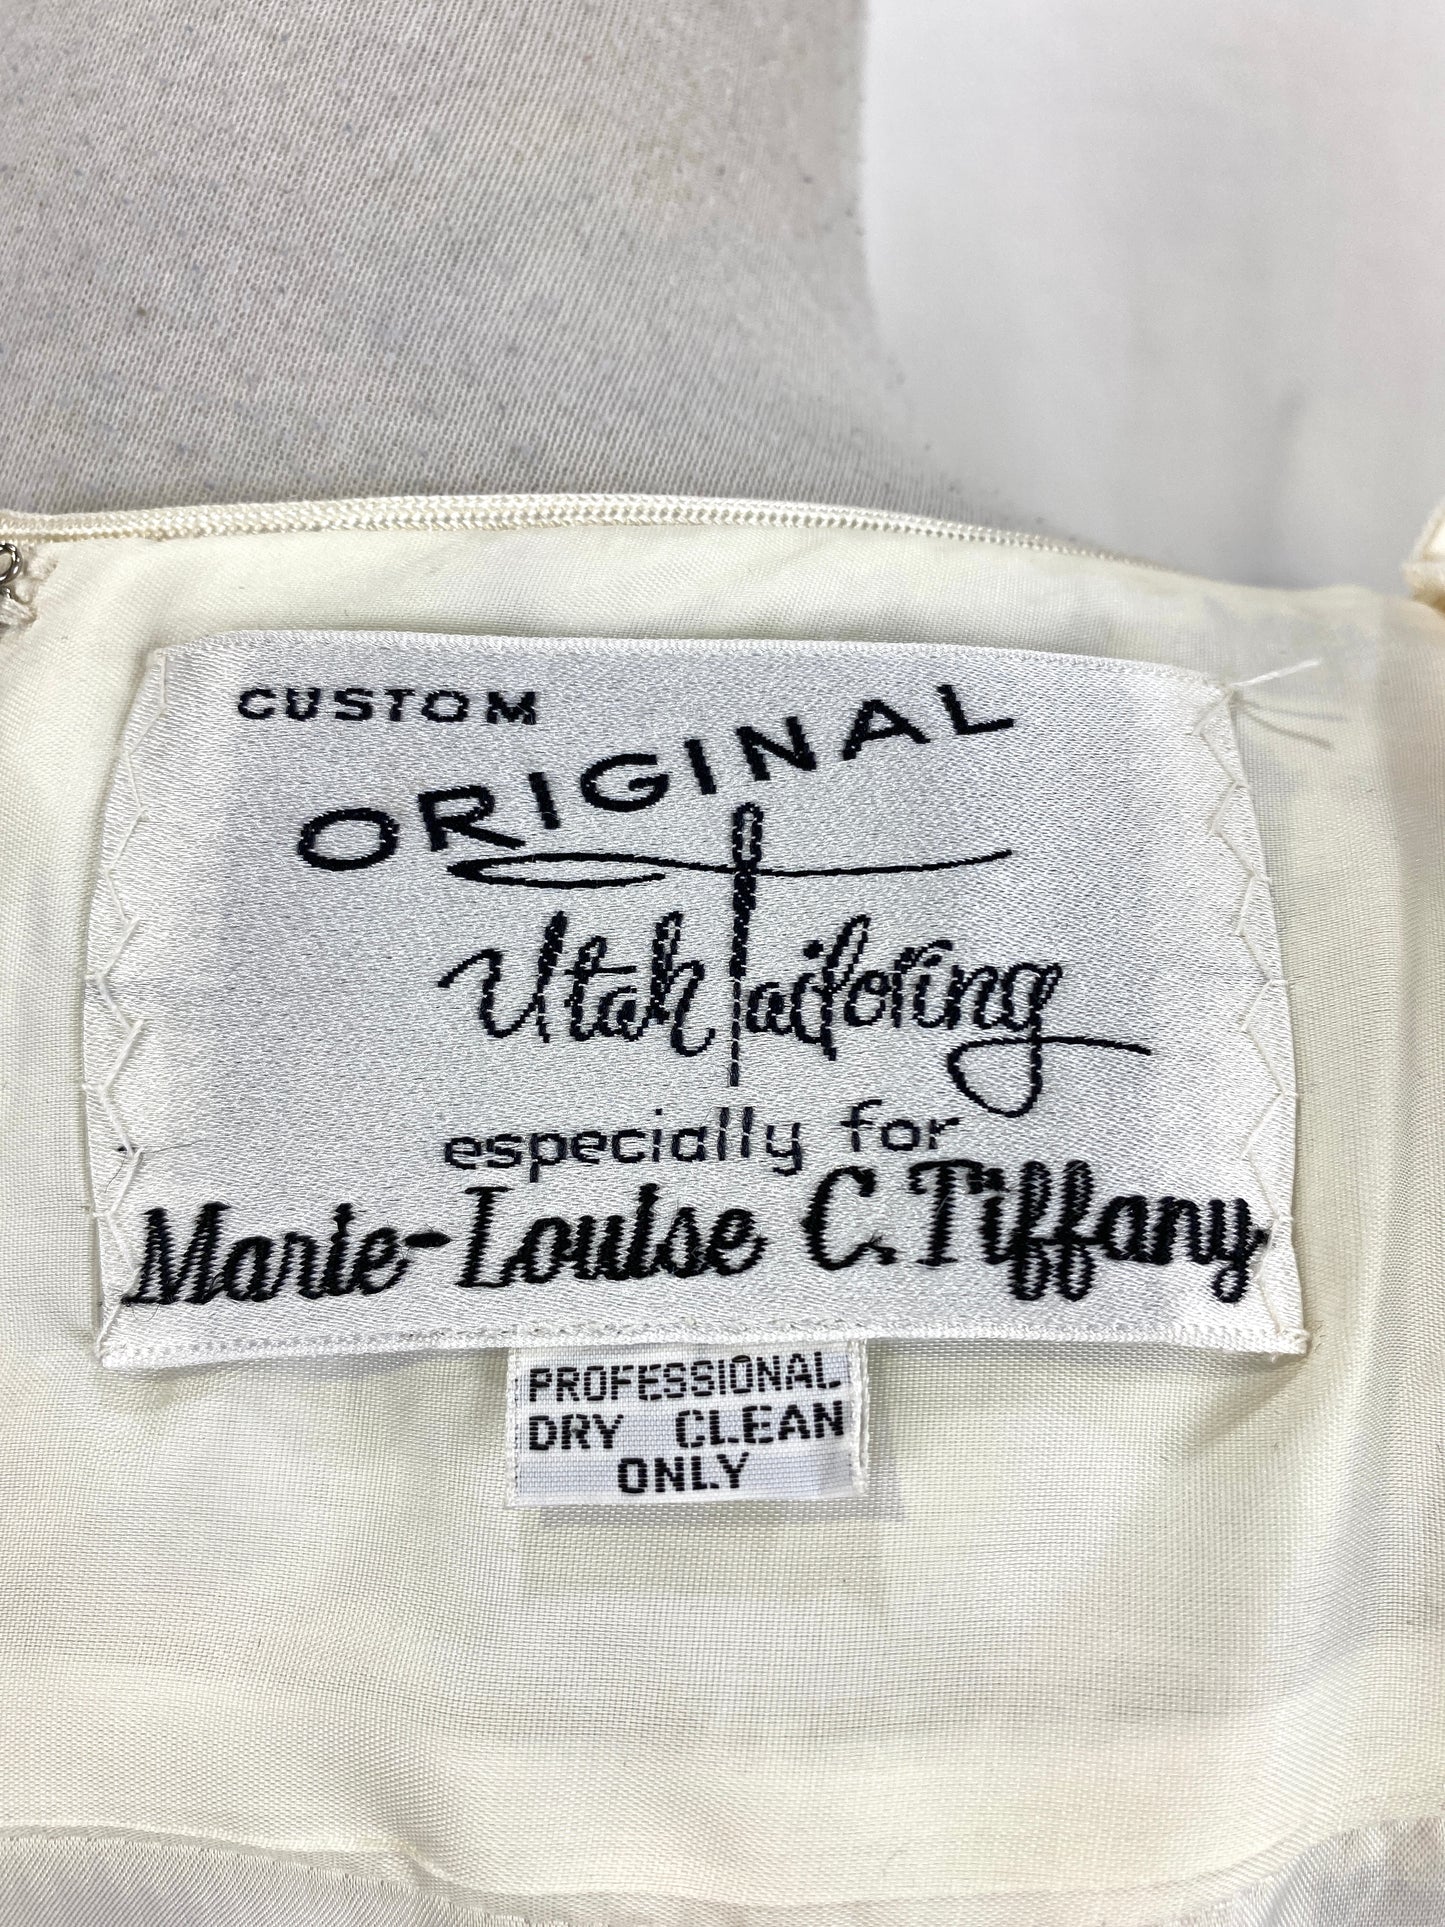 Vintage 1980s White Lace Dress, Utah Tailoring, Medium